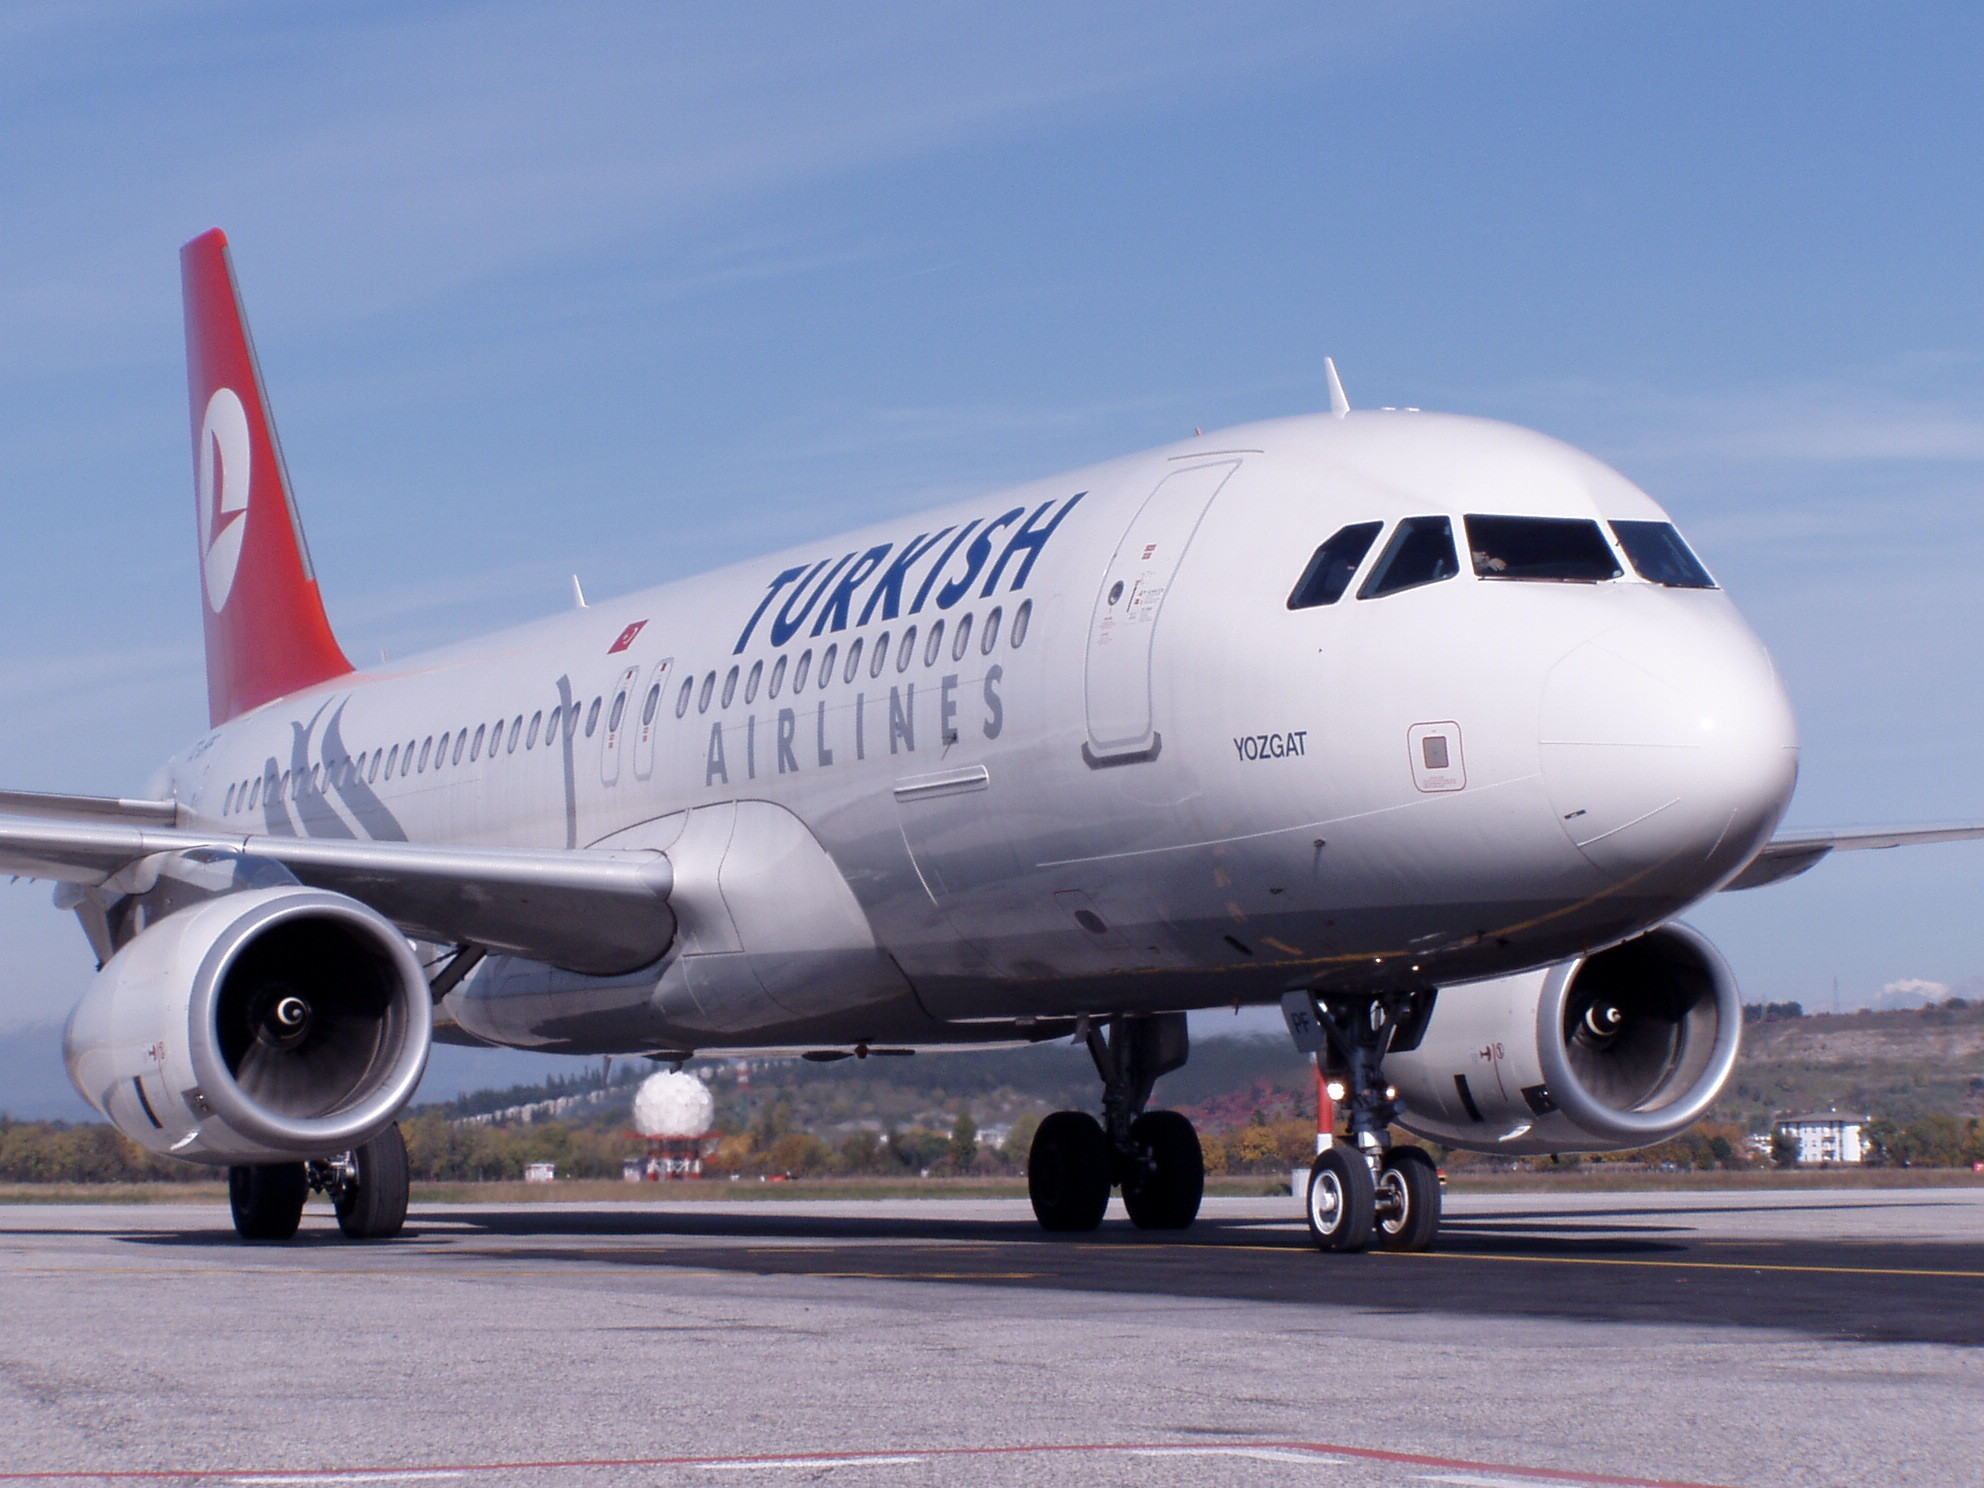 Grevă generală la compania Turkish Airlines: compania este somată să reangajeze 300 de muncitori concediaţi după o grevă anterioară